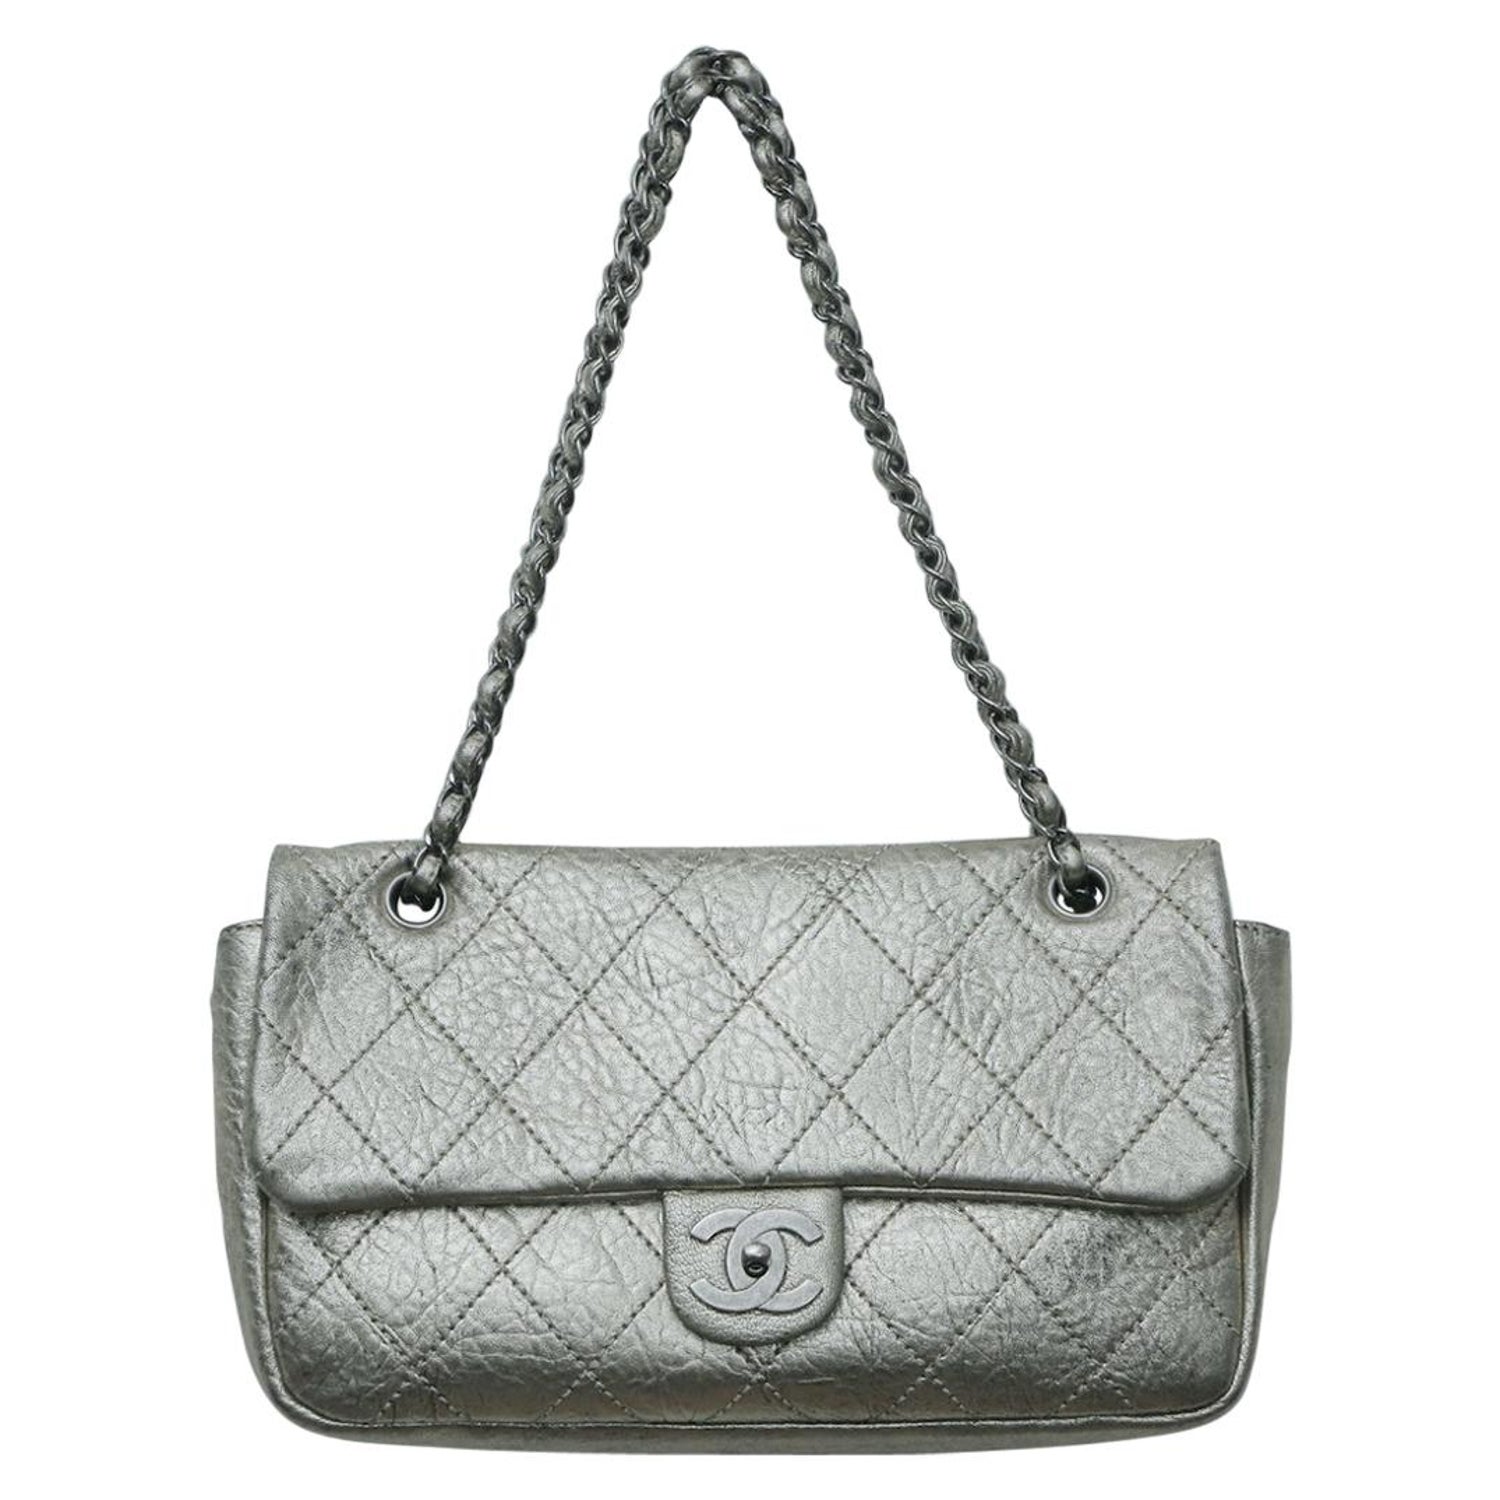 Vintage 2006 Chanel Handbag - For Sale on 1stDibs